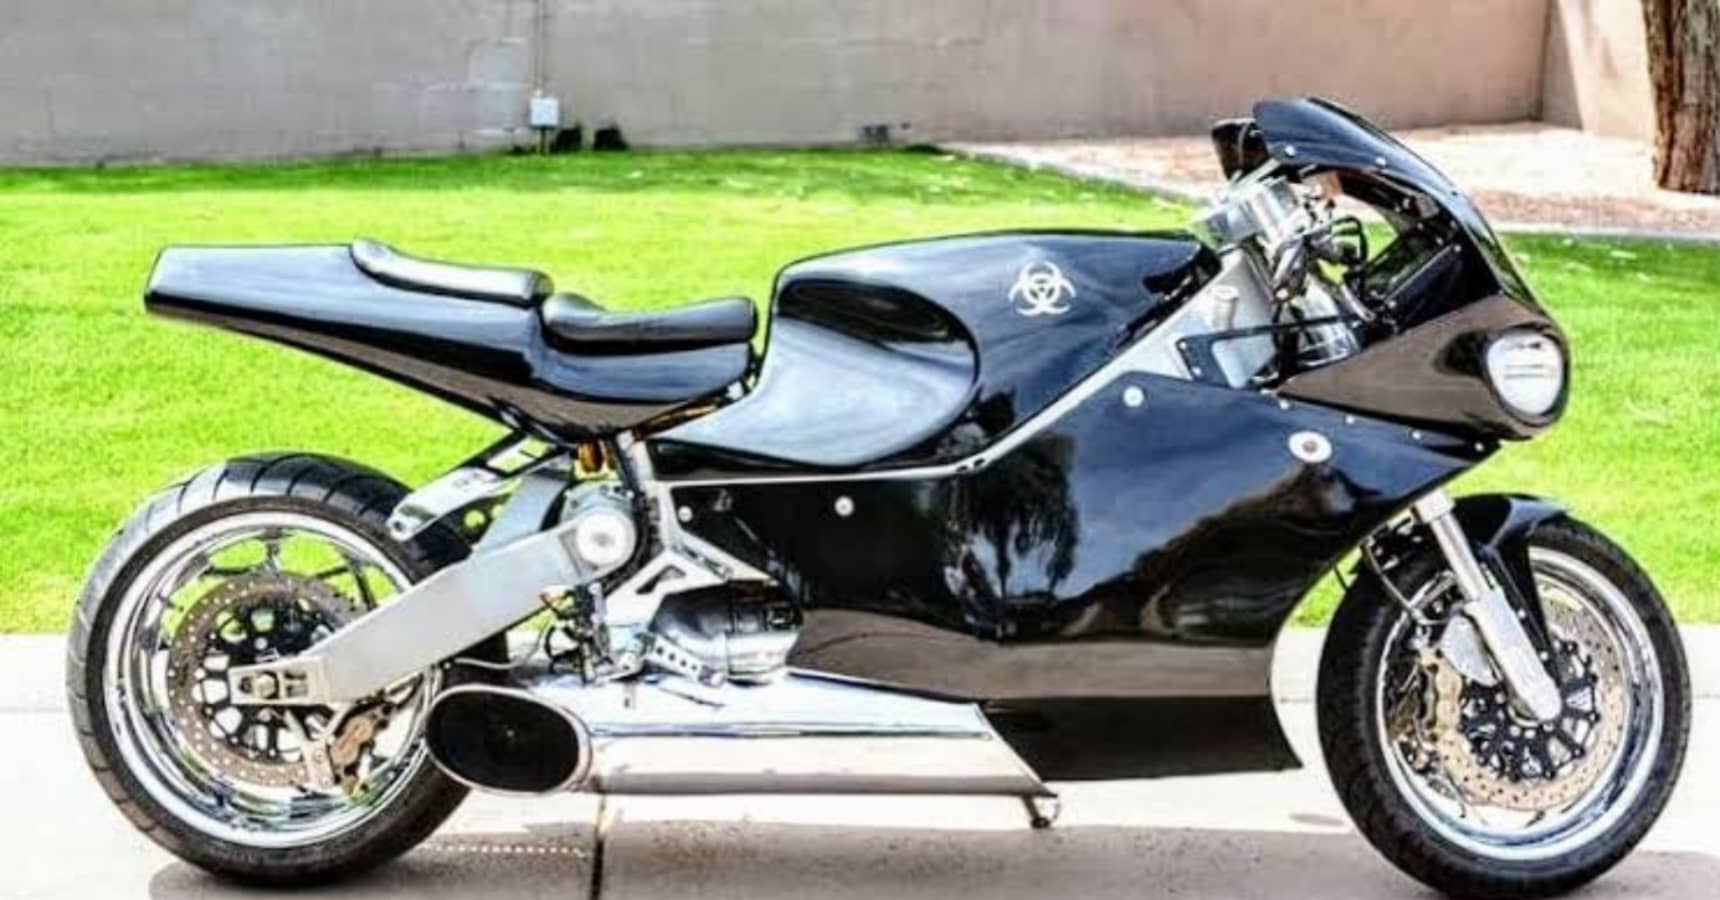 Batman's iconic Bike